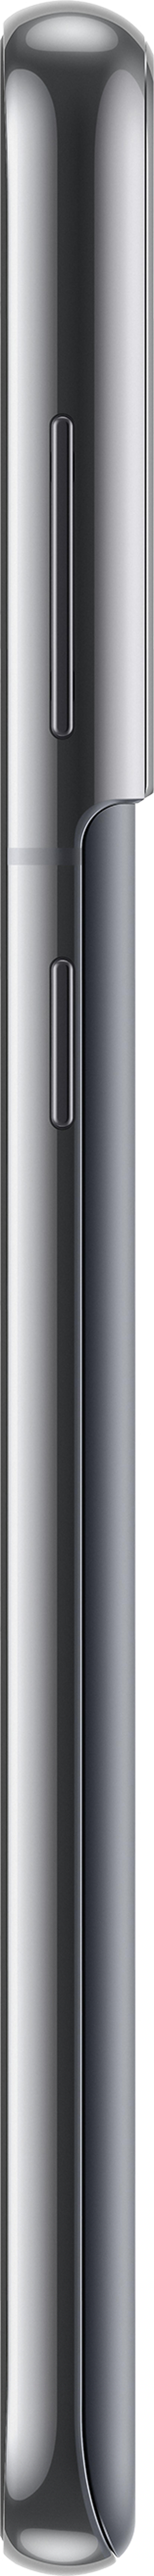 Samsung Galaxy S21 5G Enterprise Edition 128GB Dual-SIM Fantom grå